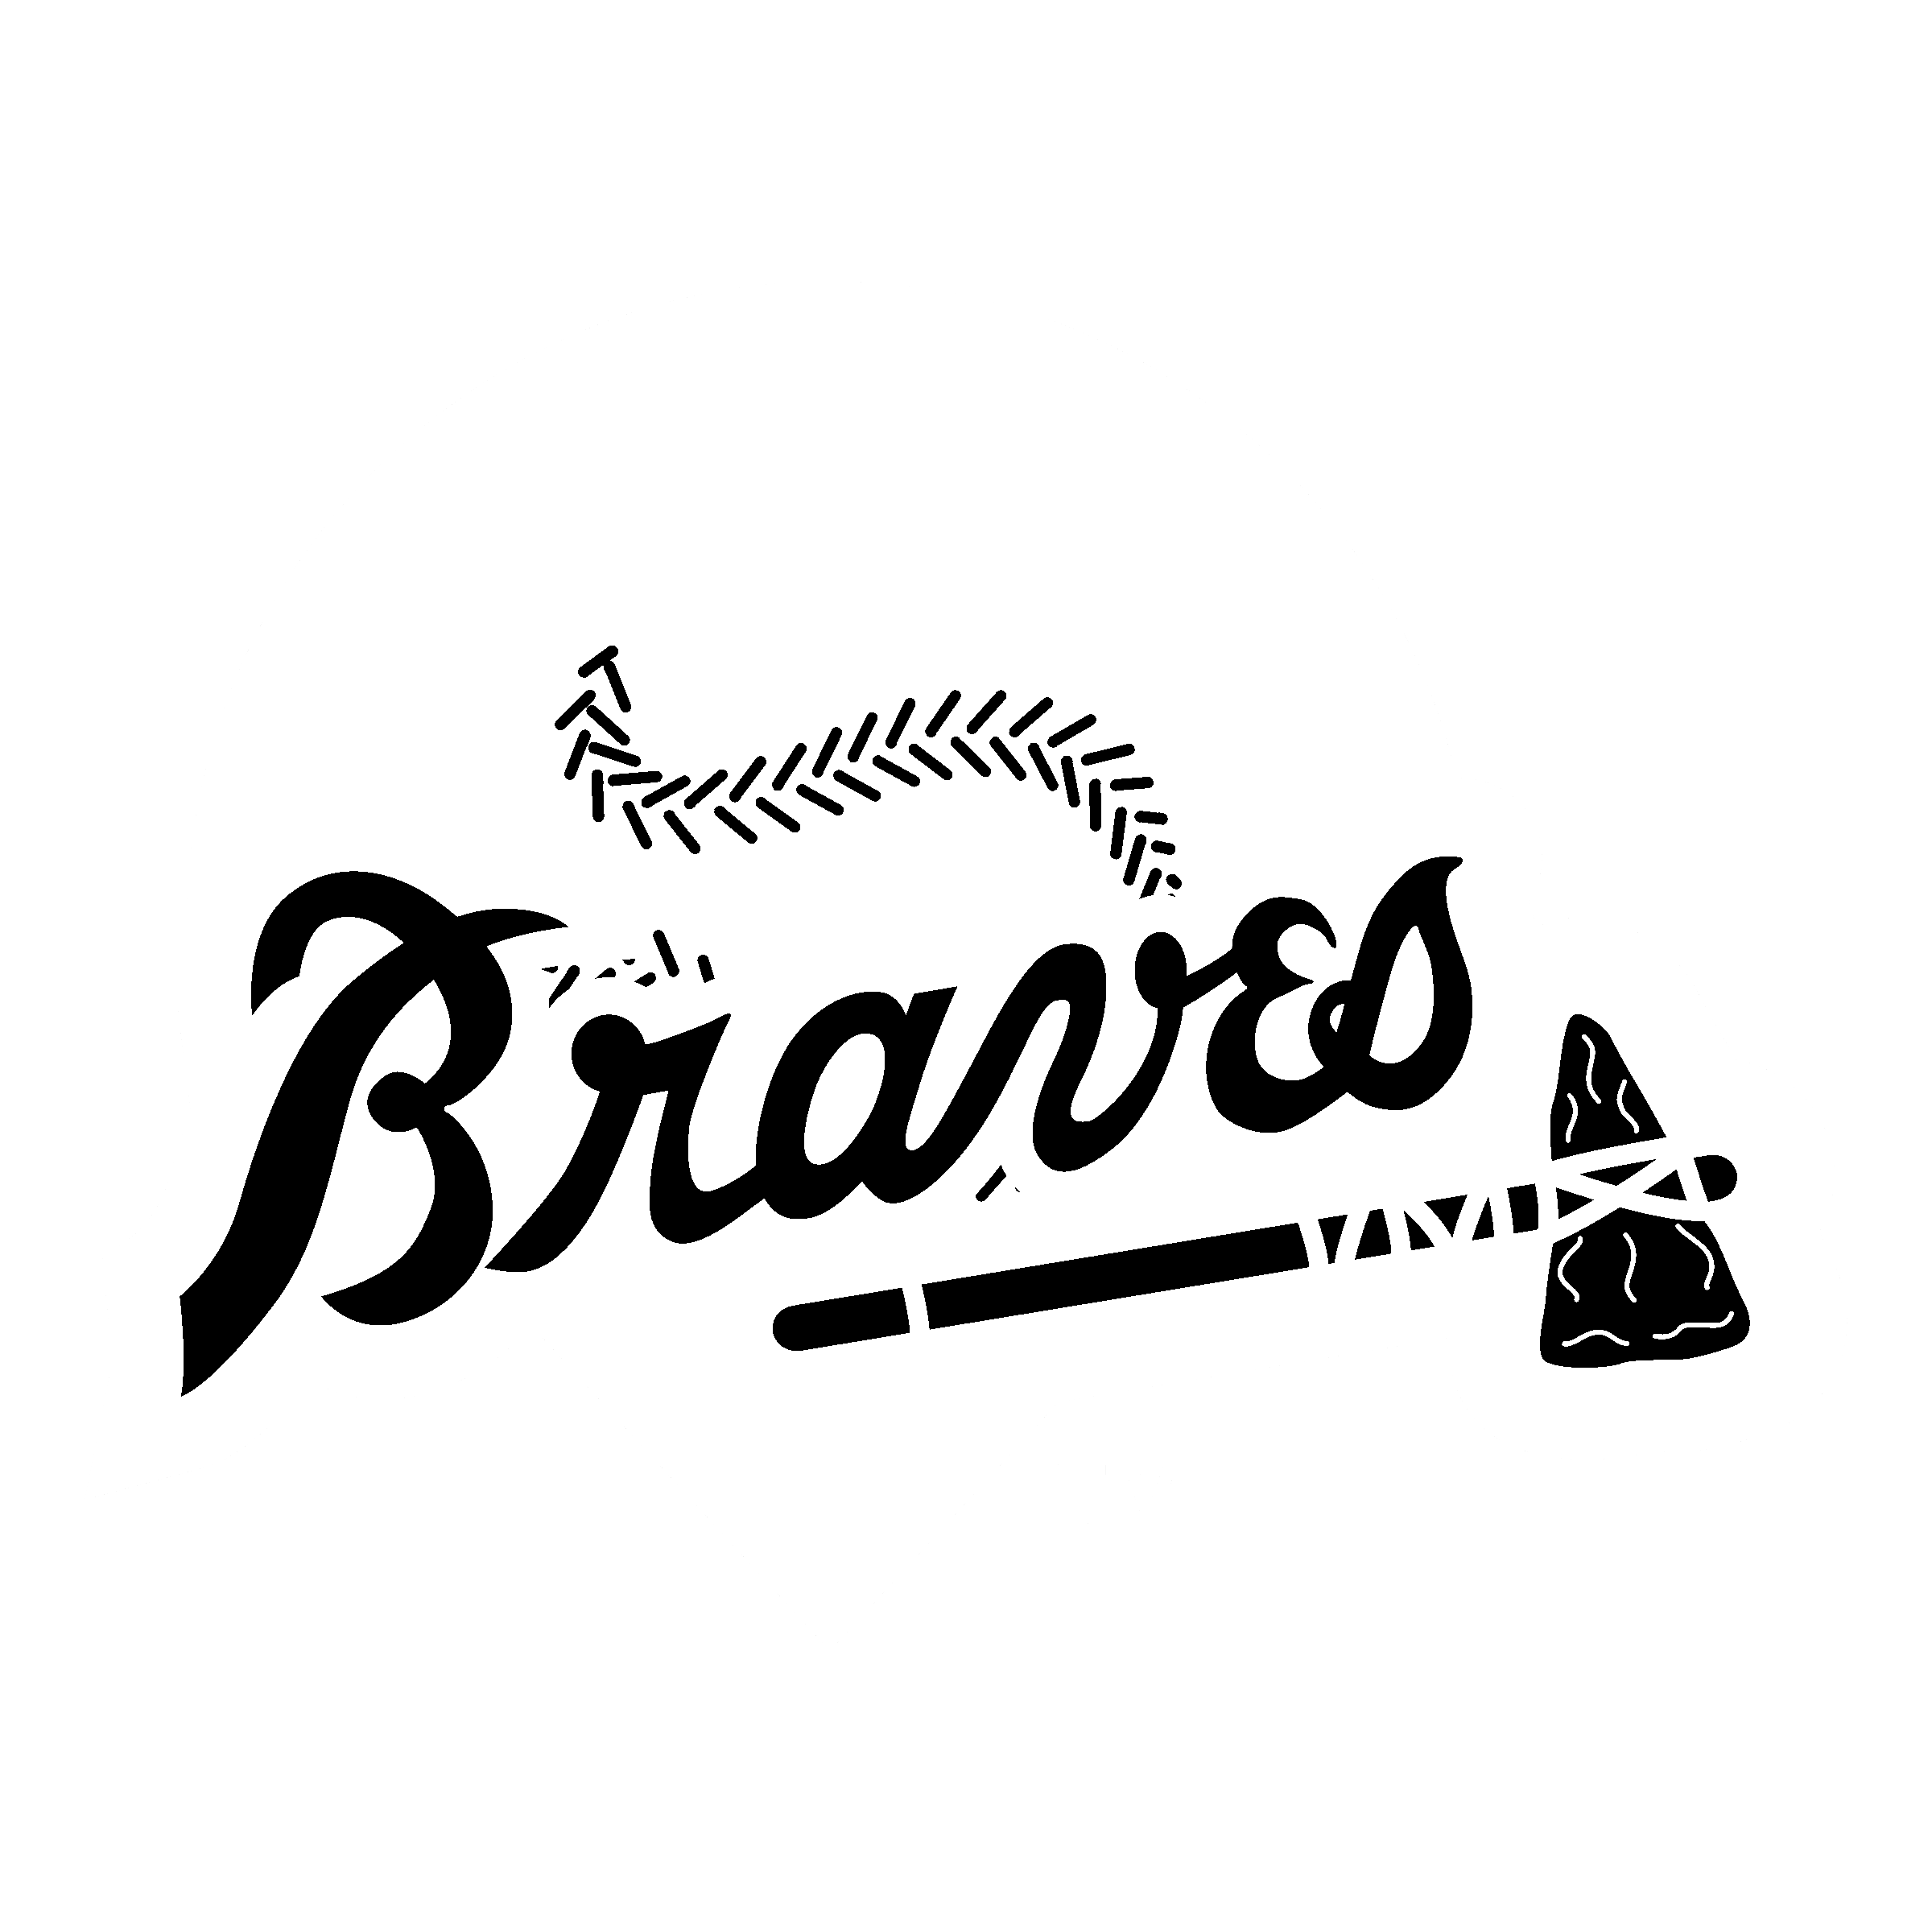 Braves Logo PNG Transparent Images - PNG All